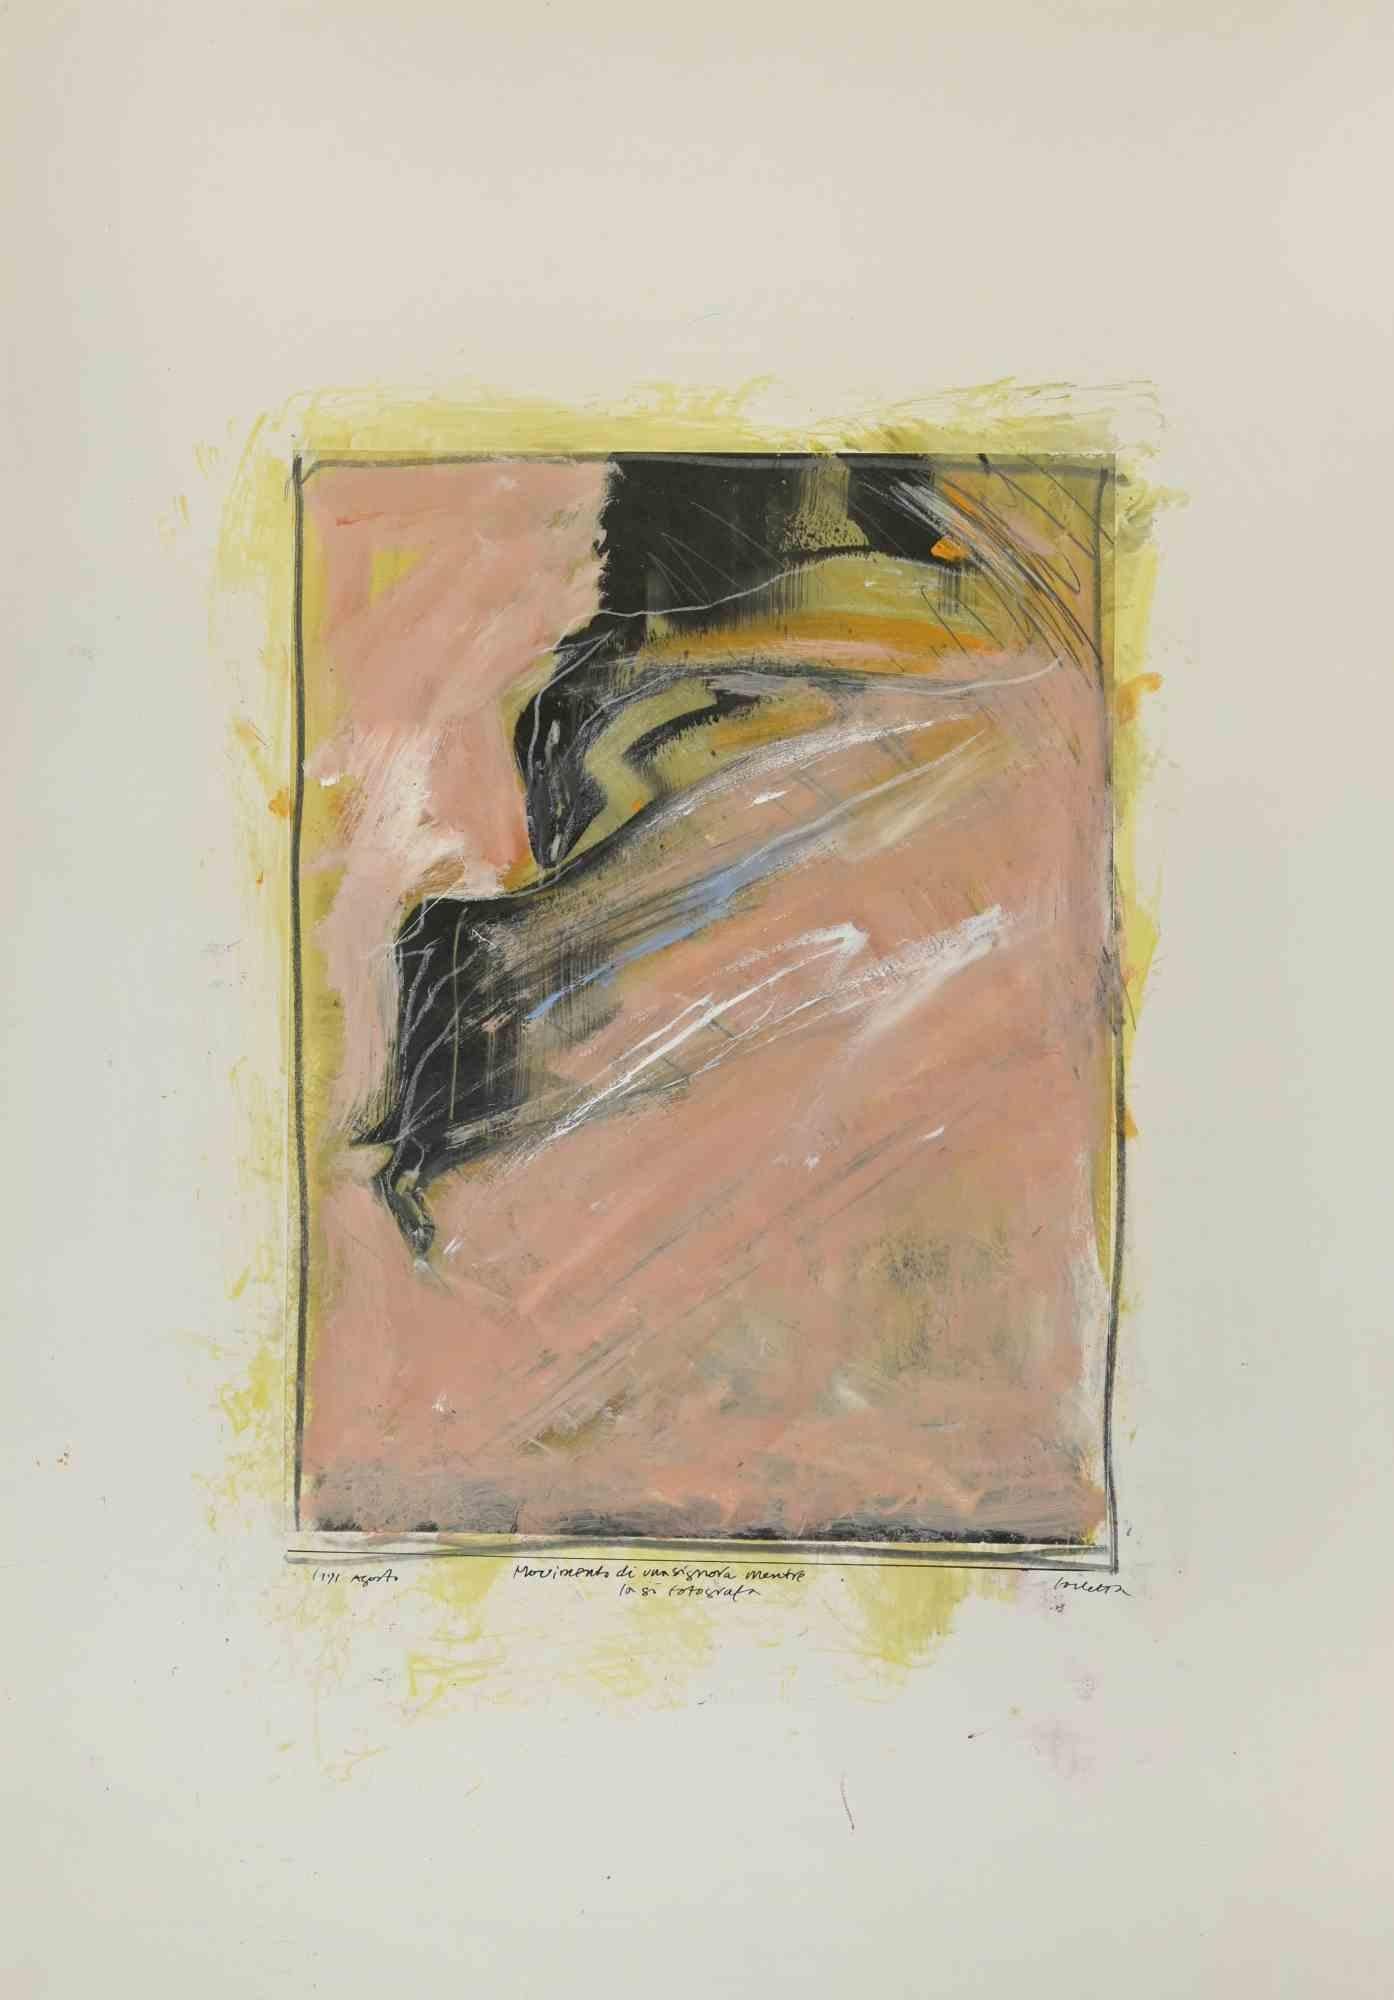 Die Bewegung einer Frau, während sie fotografiert wird, ist ein auf Karton aufgetragenes Gemälde von Sergio Barletta aus dem Jahr 1991.

Tempera und Bleiweiß auf Karton.

Am unteren Rand handsigniert, betitelt und datiert. 

Gute